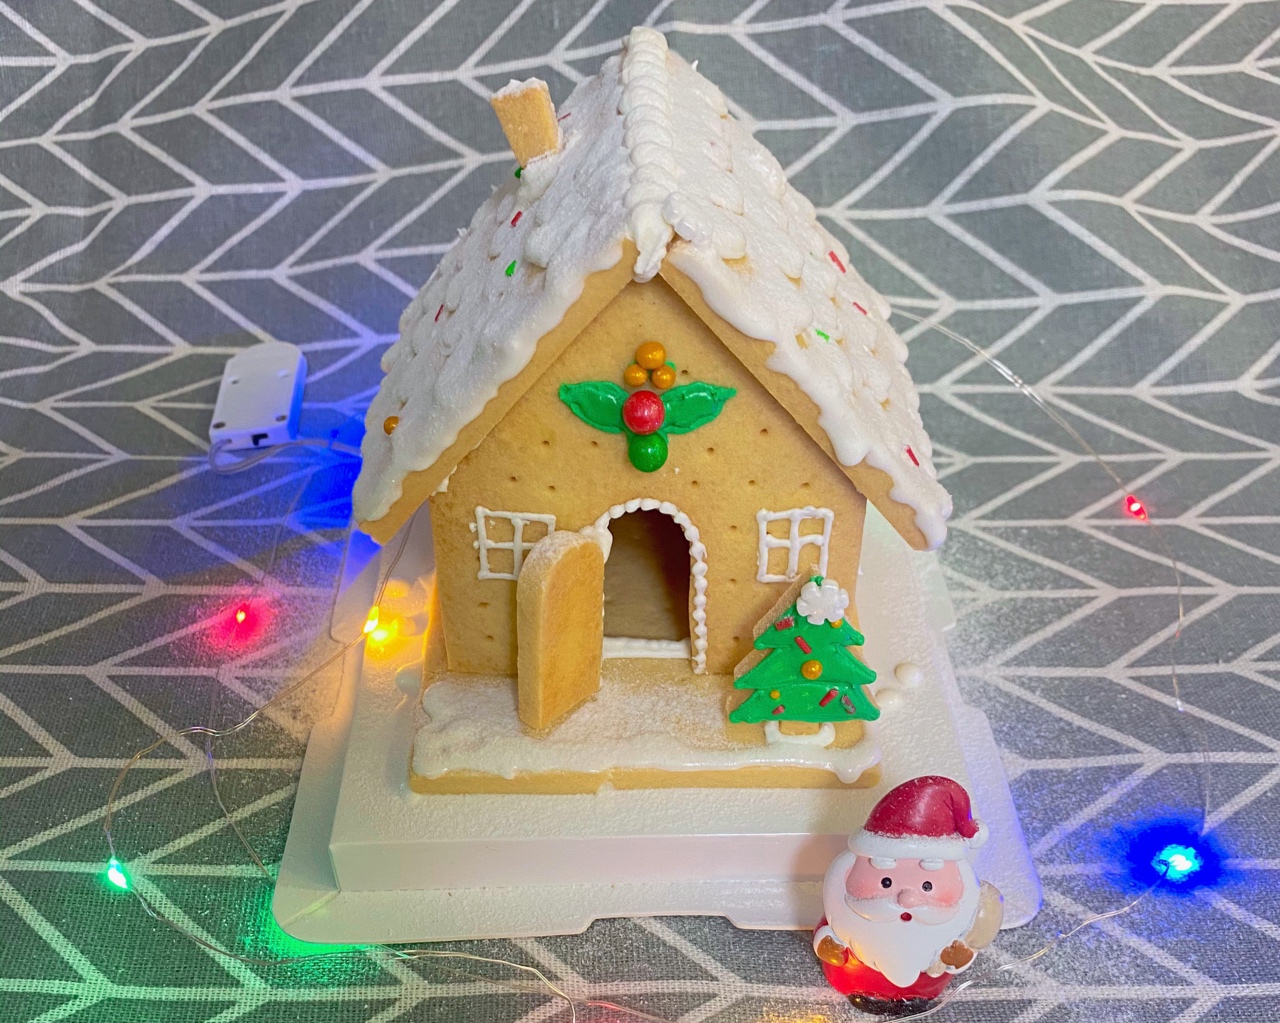 圣诞节糖霜饼屋、附上糖霜配方打做法唯美圣诞主题饼干、的做法